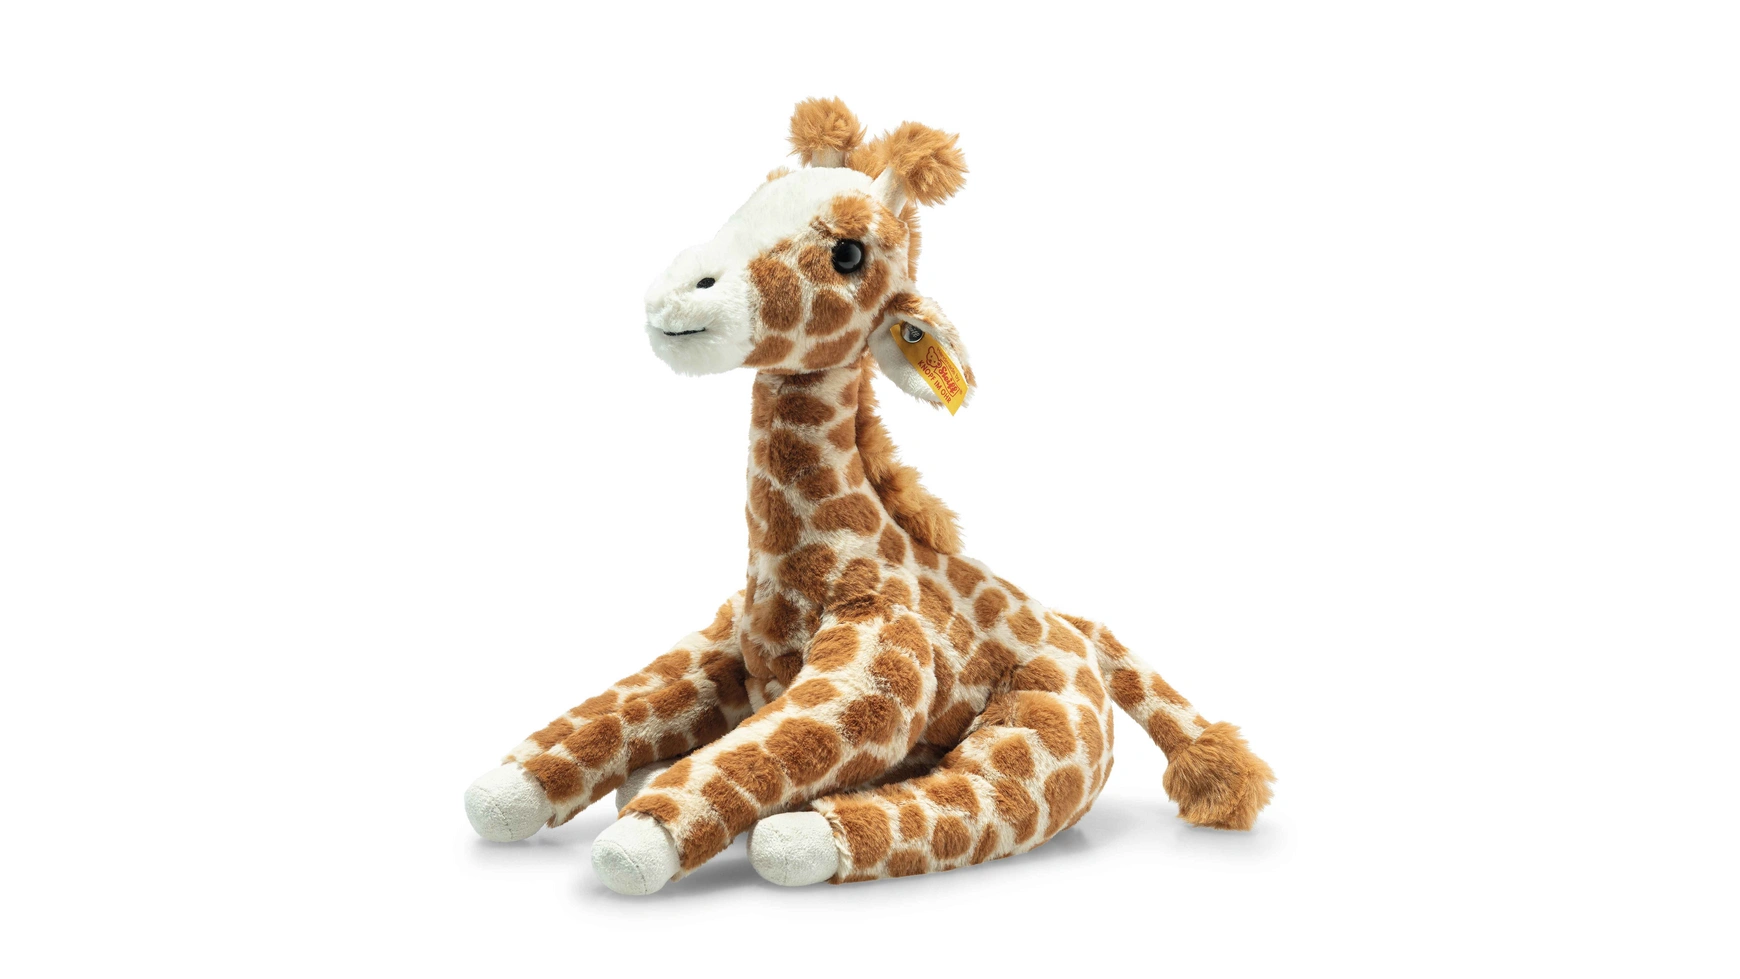 цена Steiff Soft Cuddly Friends Gina Giraffe 25 см